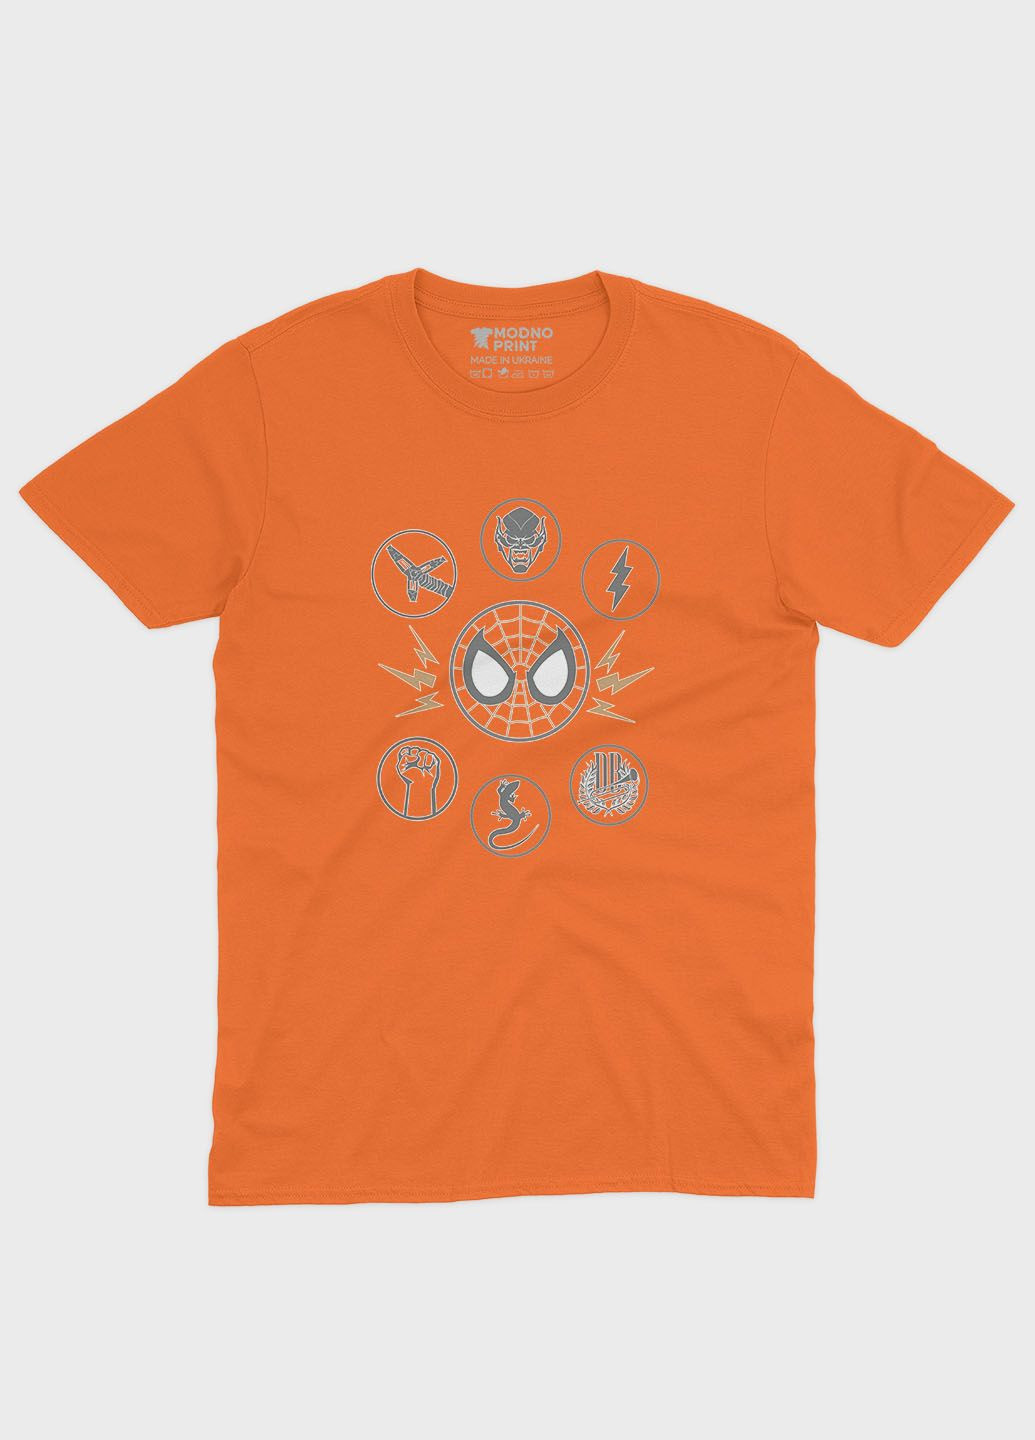 Оранжевая демисезонная футболка для девочки с принтом супергероя - человек-паук (ts001-1-ora-006-014-012-g) Modno